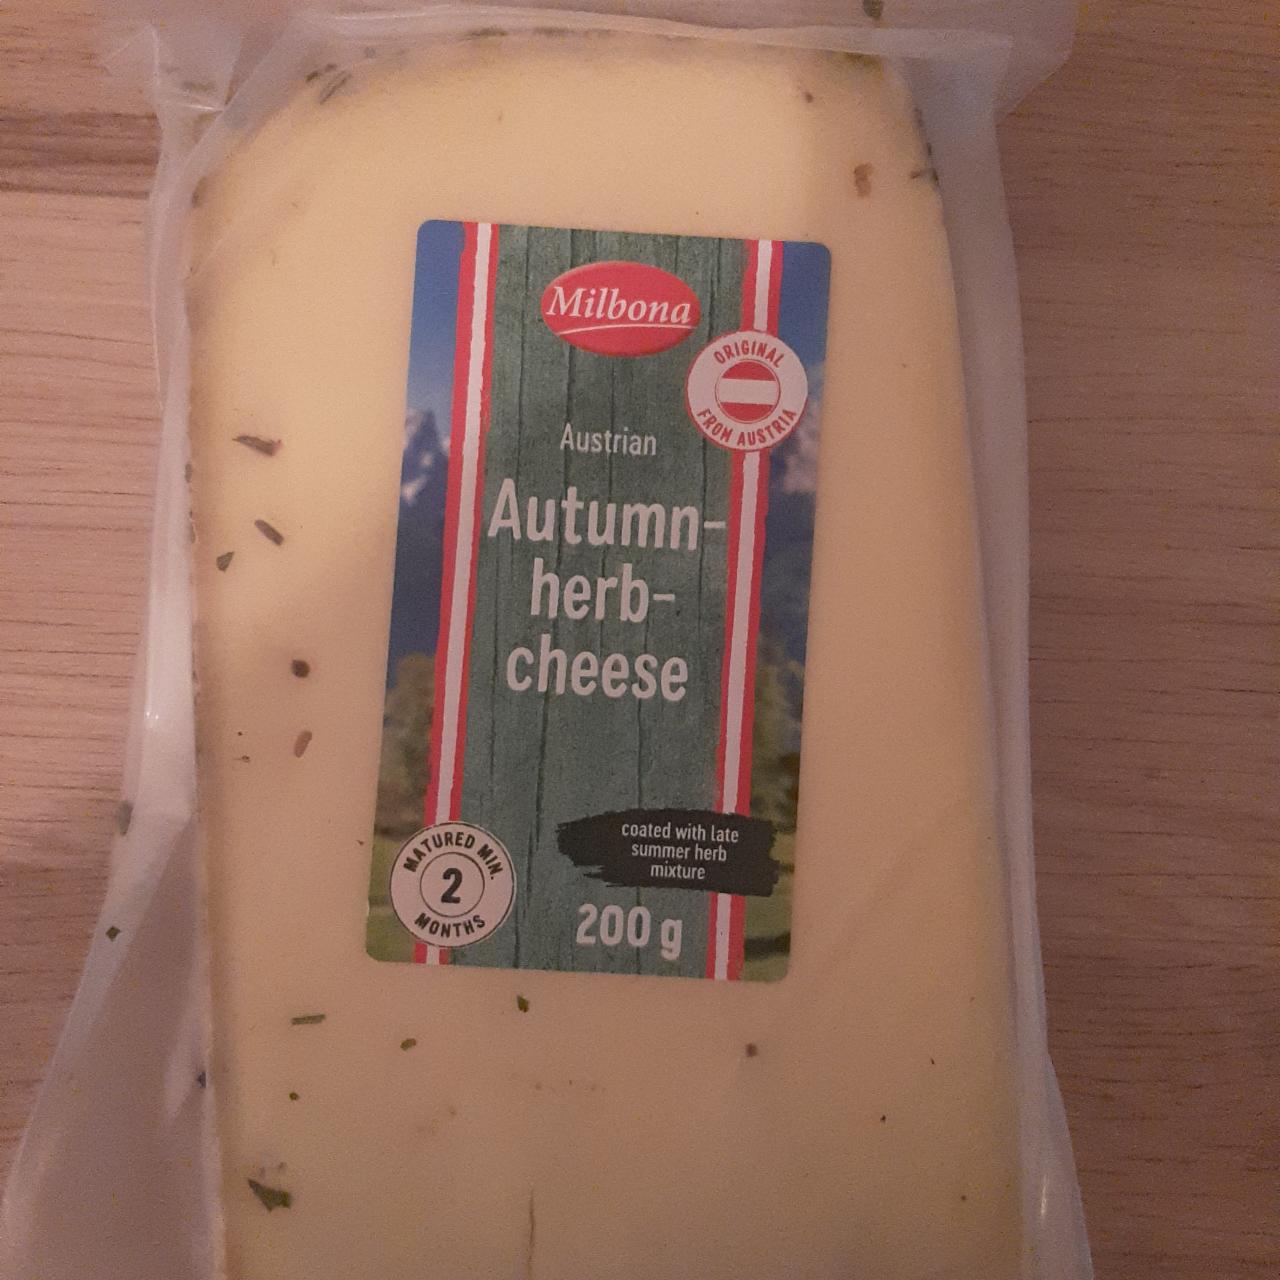 Fotografie - Autumn-herb-cheese Milbona